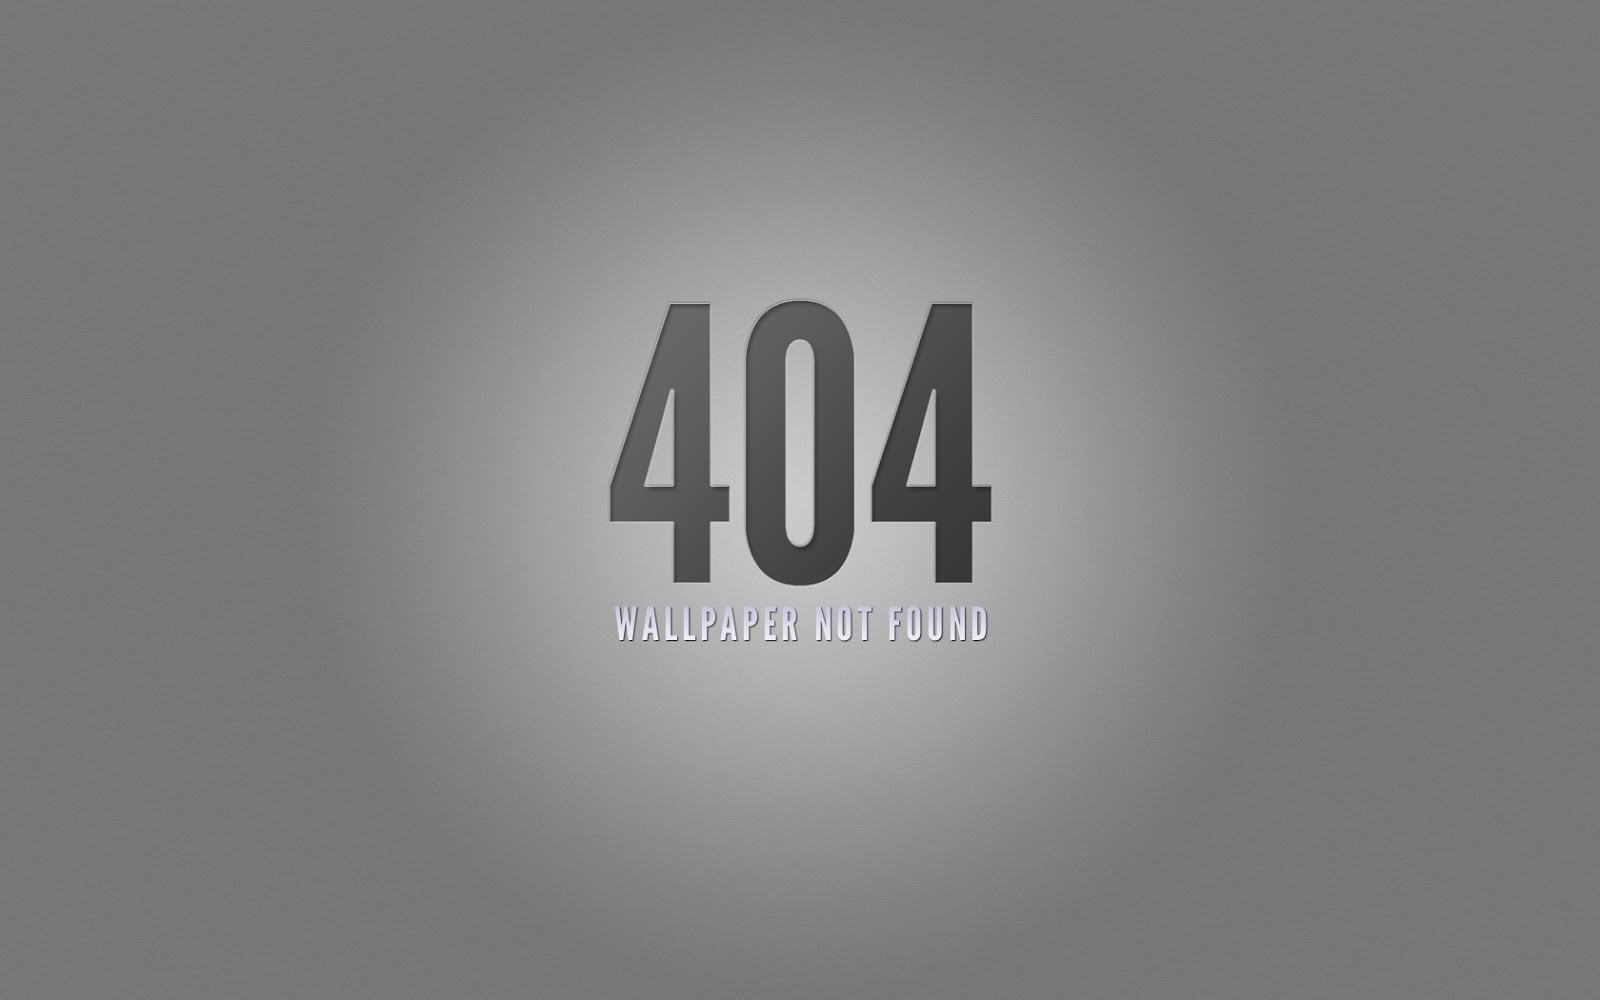 gambar dan wallpaper 404 error error 404 wallpaper jkvtt jpg